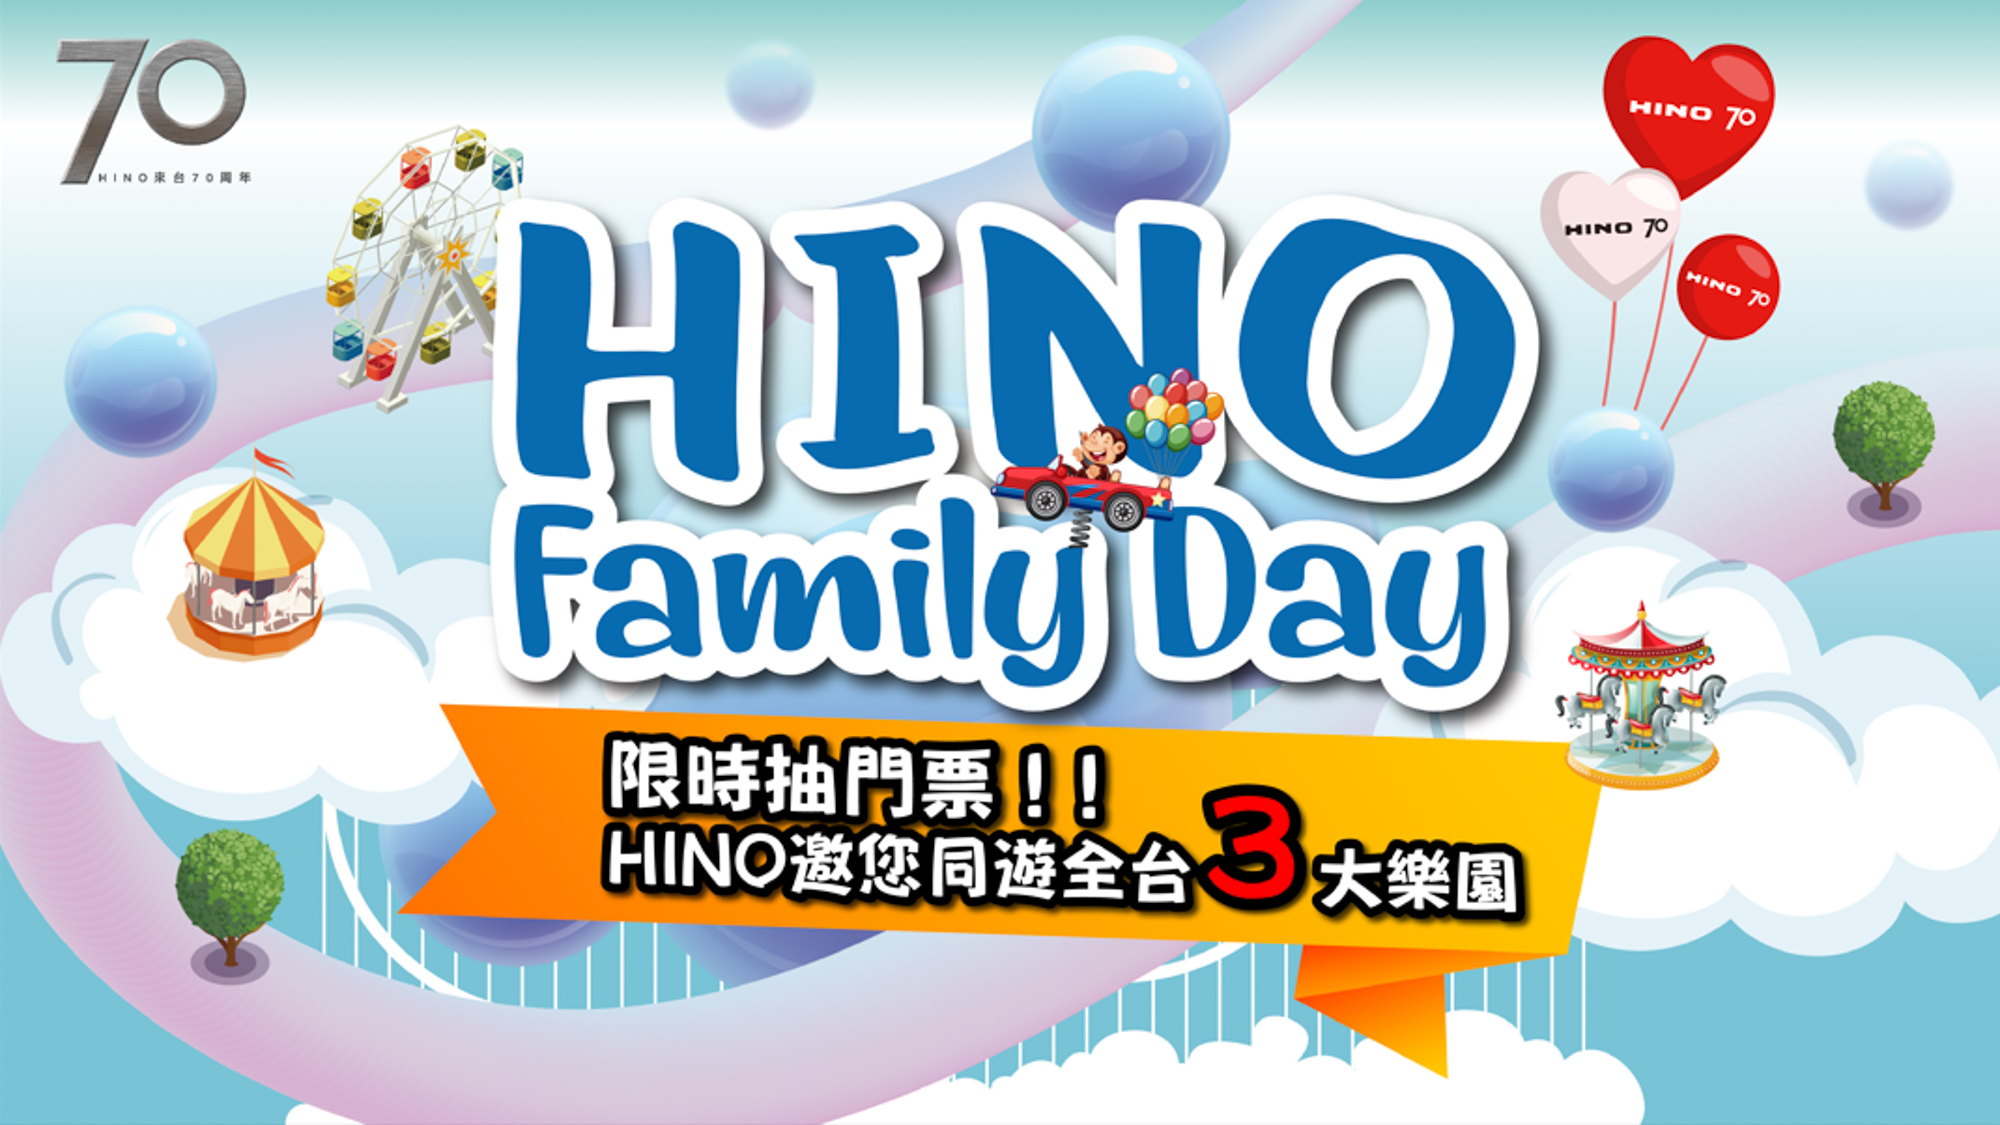 HINO 70 Family Day 主題樂園門票抽獎活動開跑